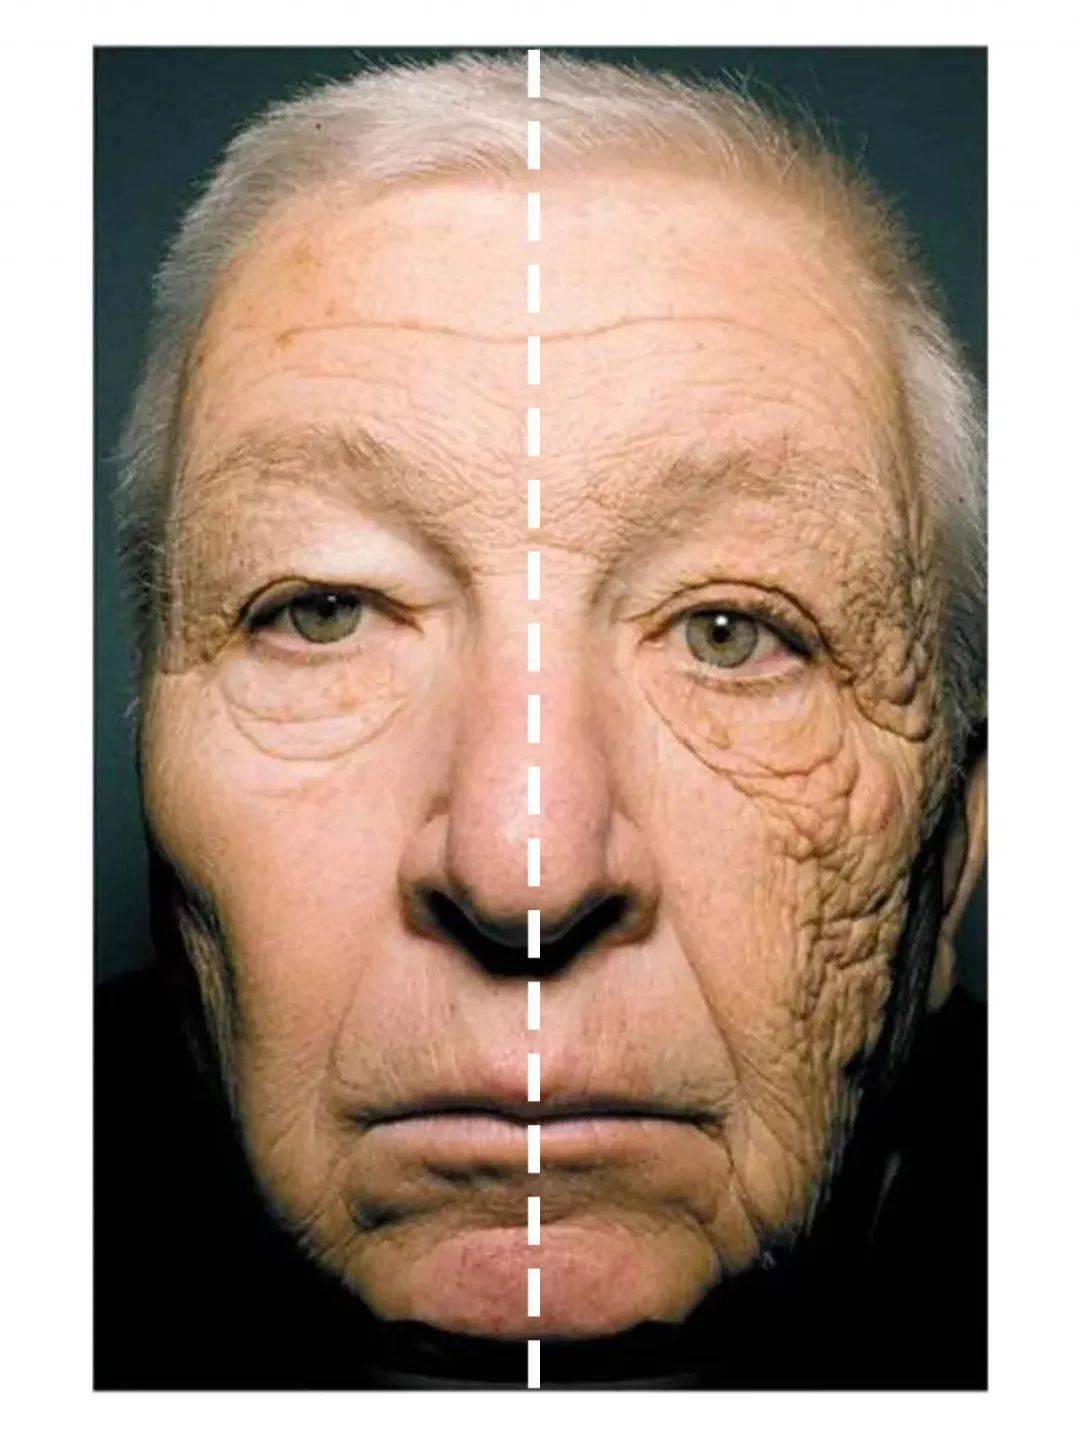 紫外线对我们皮肤的伤害我相信大家都很清楚了,这张防晒对比图肯定都